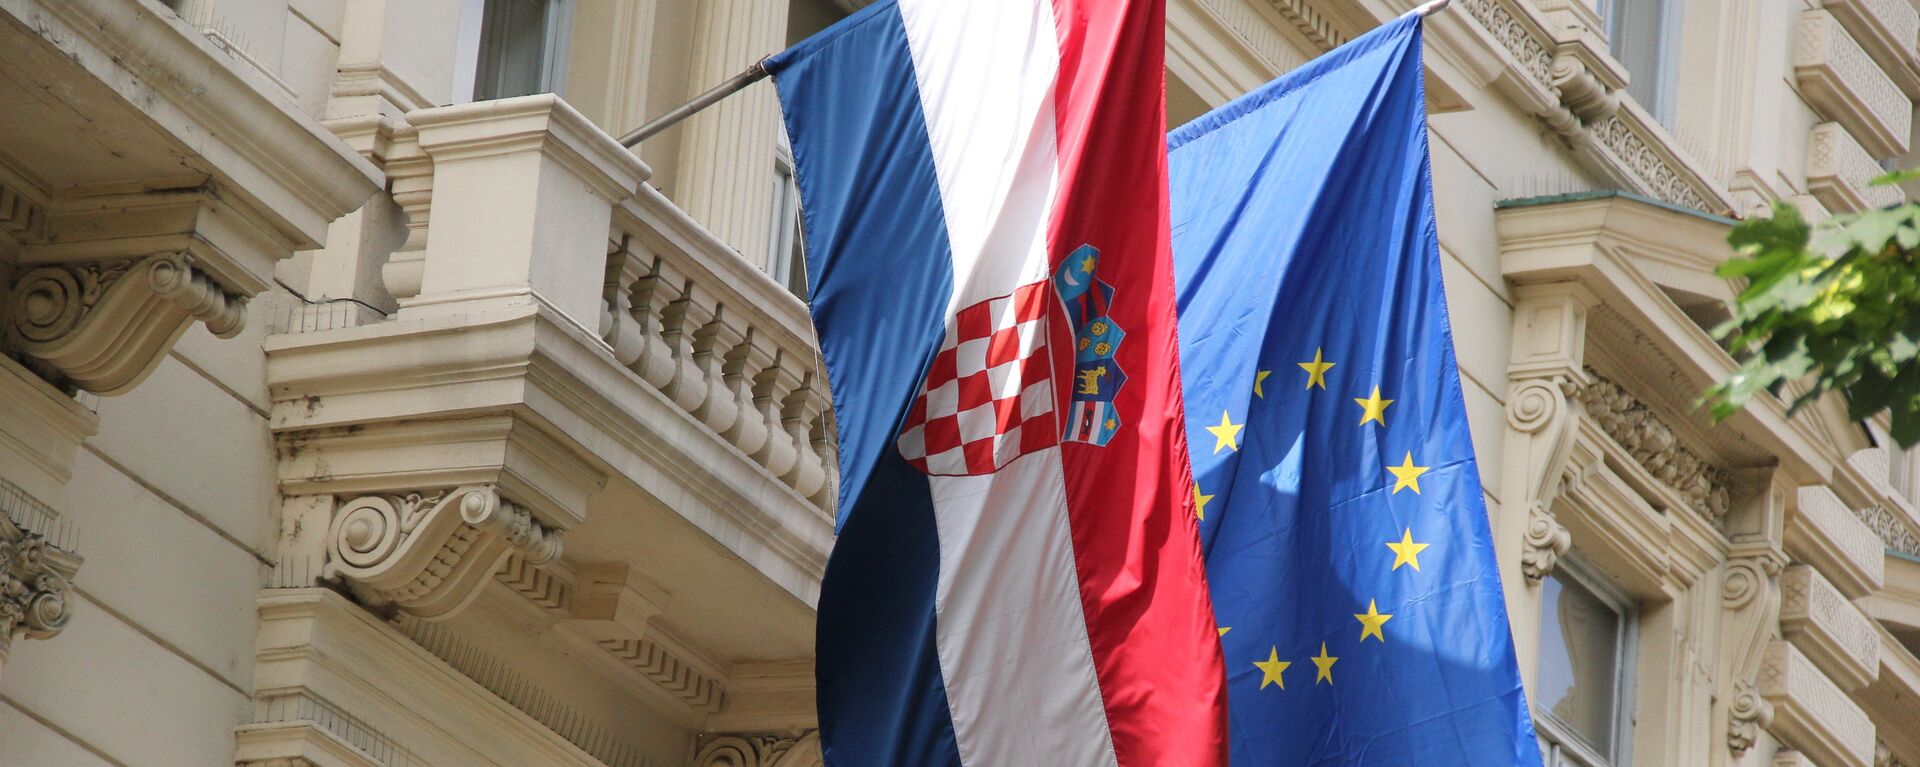 Zastave Hrvatske i EU - Sputnik Srbija, 1920, 08.07.2021